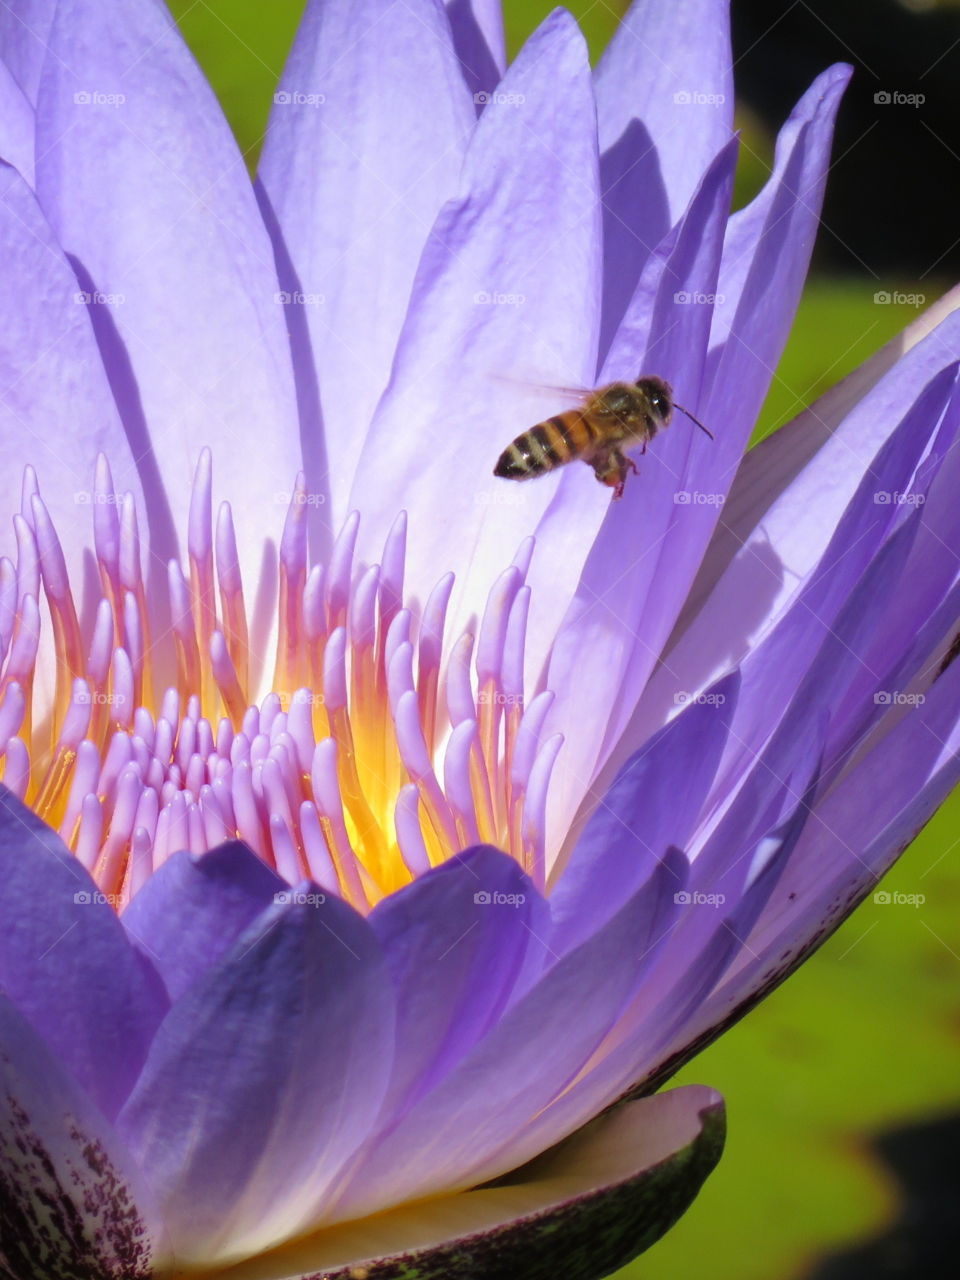 Honeybee & Waterlily